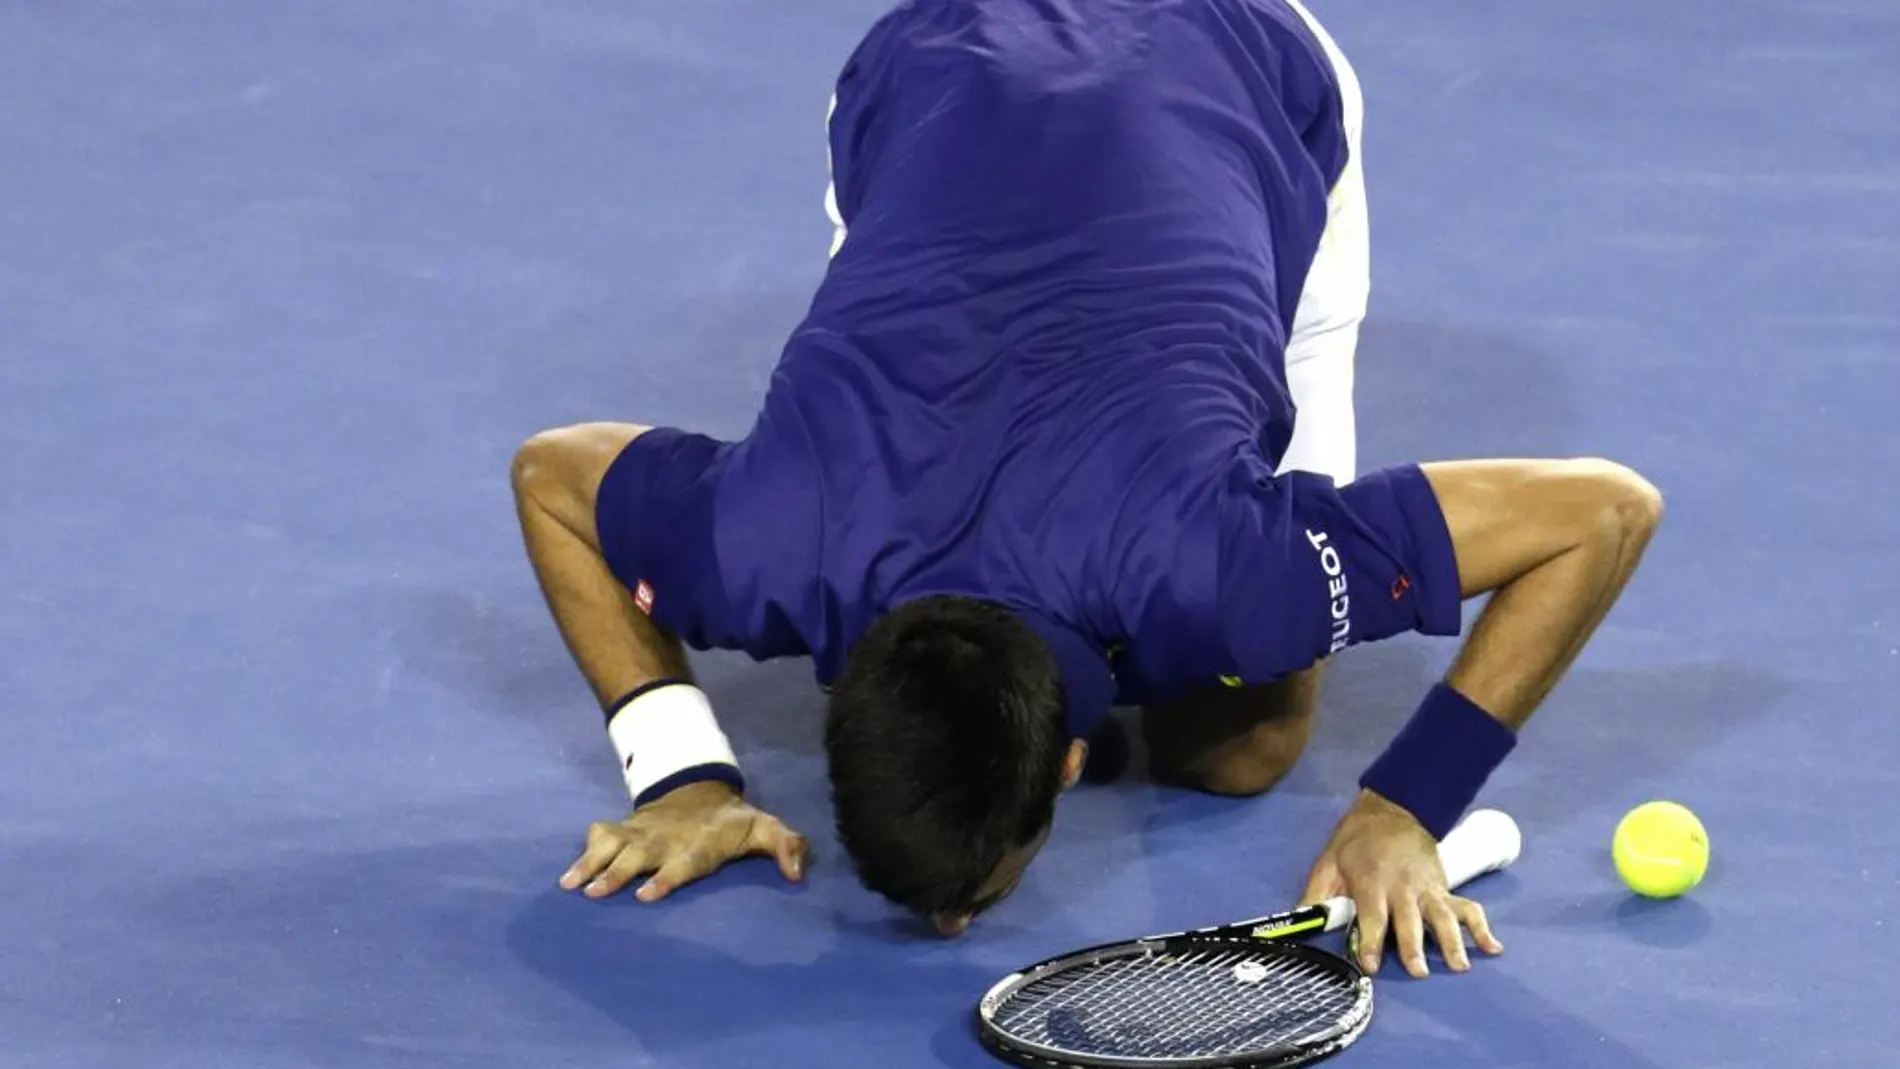 Djokovic celebra su triunfo